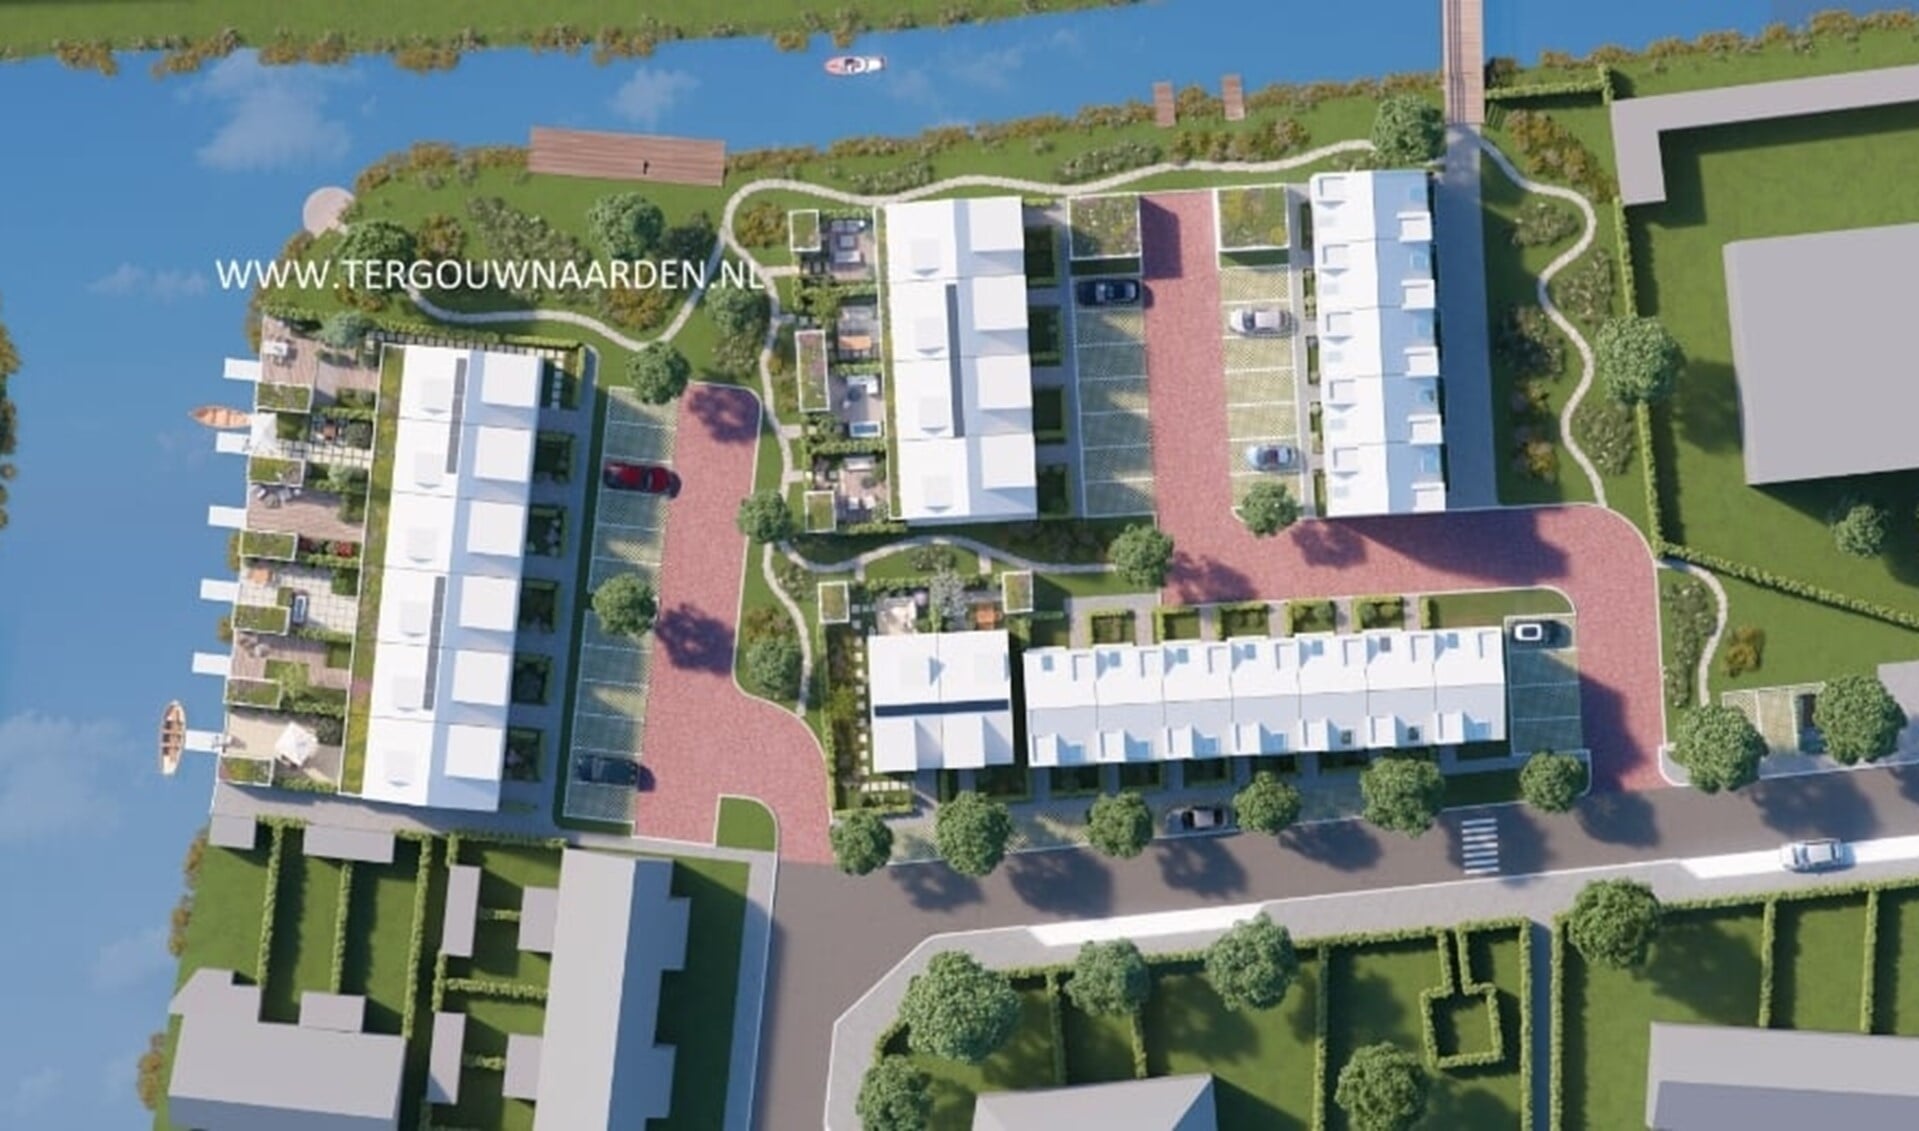 FH Projectontwikkeling wil 36 woningen bouwen op het speelterrein aan de Jan ter Gouwweg.  Niet iedere buurtbewoner ziet deze ontwikkeling zitten. Samen vormen zij de actiegroep Mooi Ter Gouw.